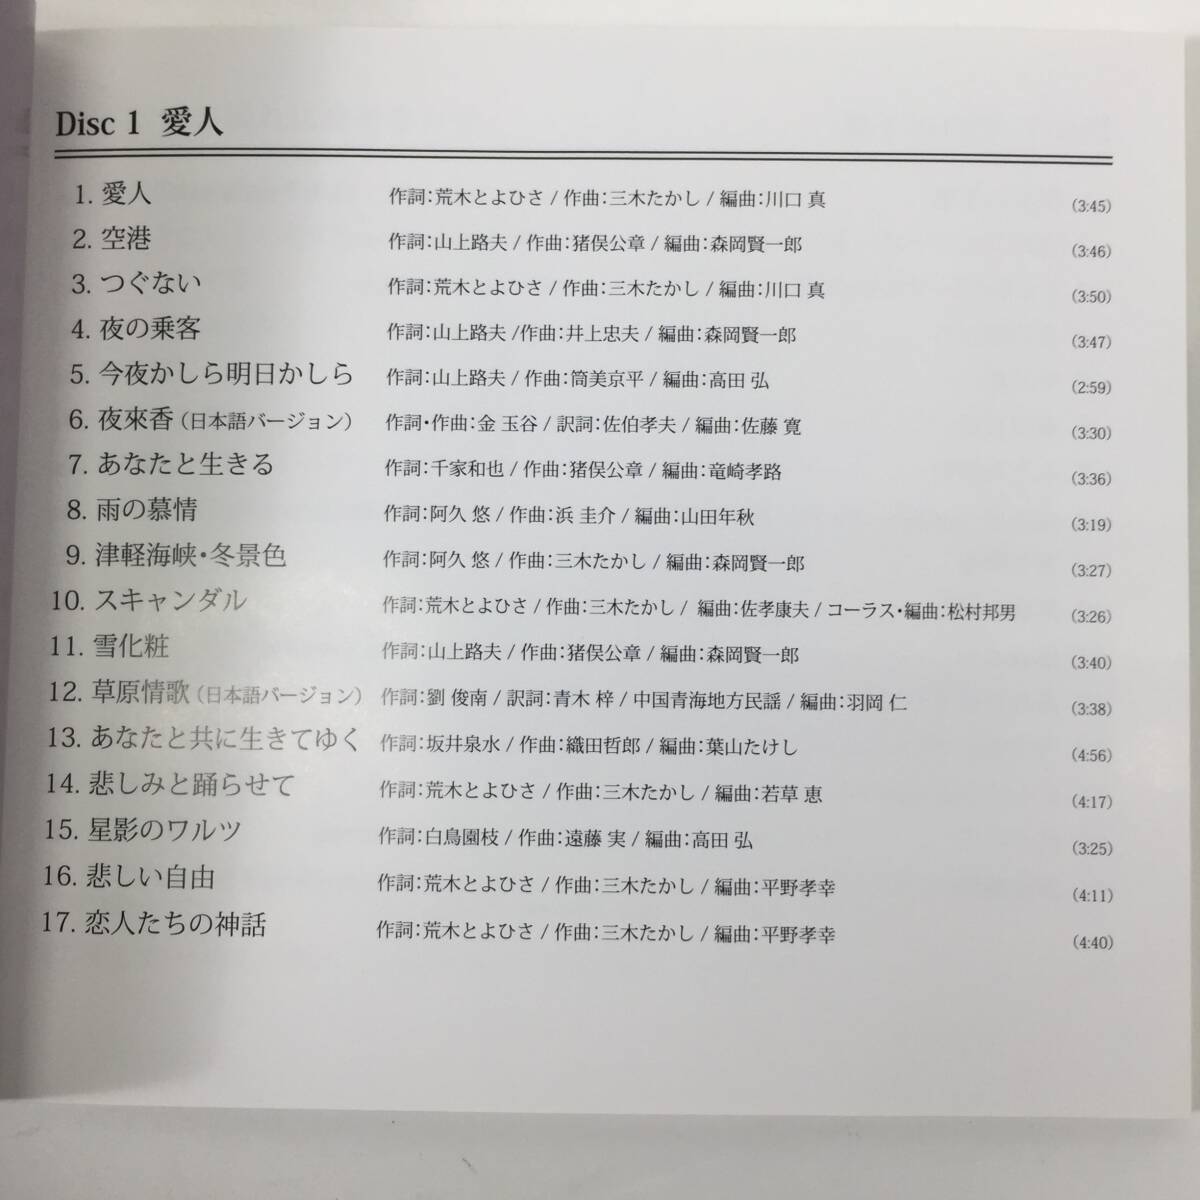 テレサテン 伝説の歌姫 CDボックス 特典DVD付 愛人 別れの予感 時の流れに身をまかせ 24c菊TKの画像9